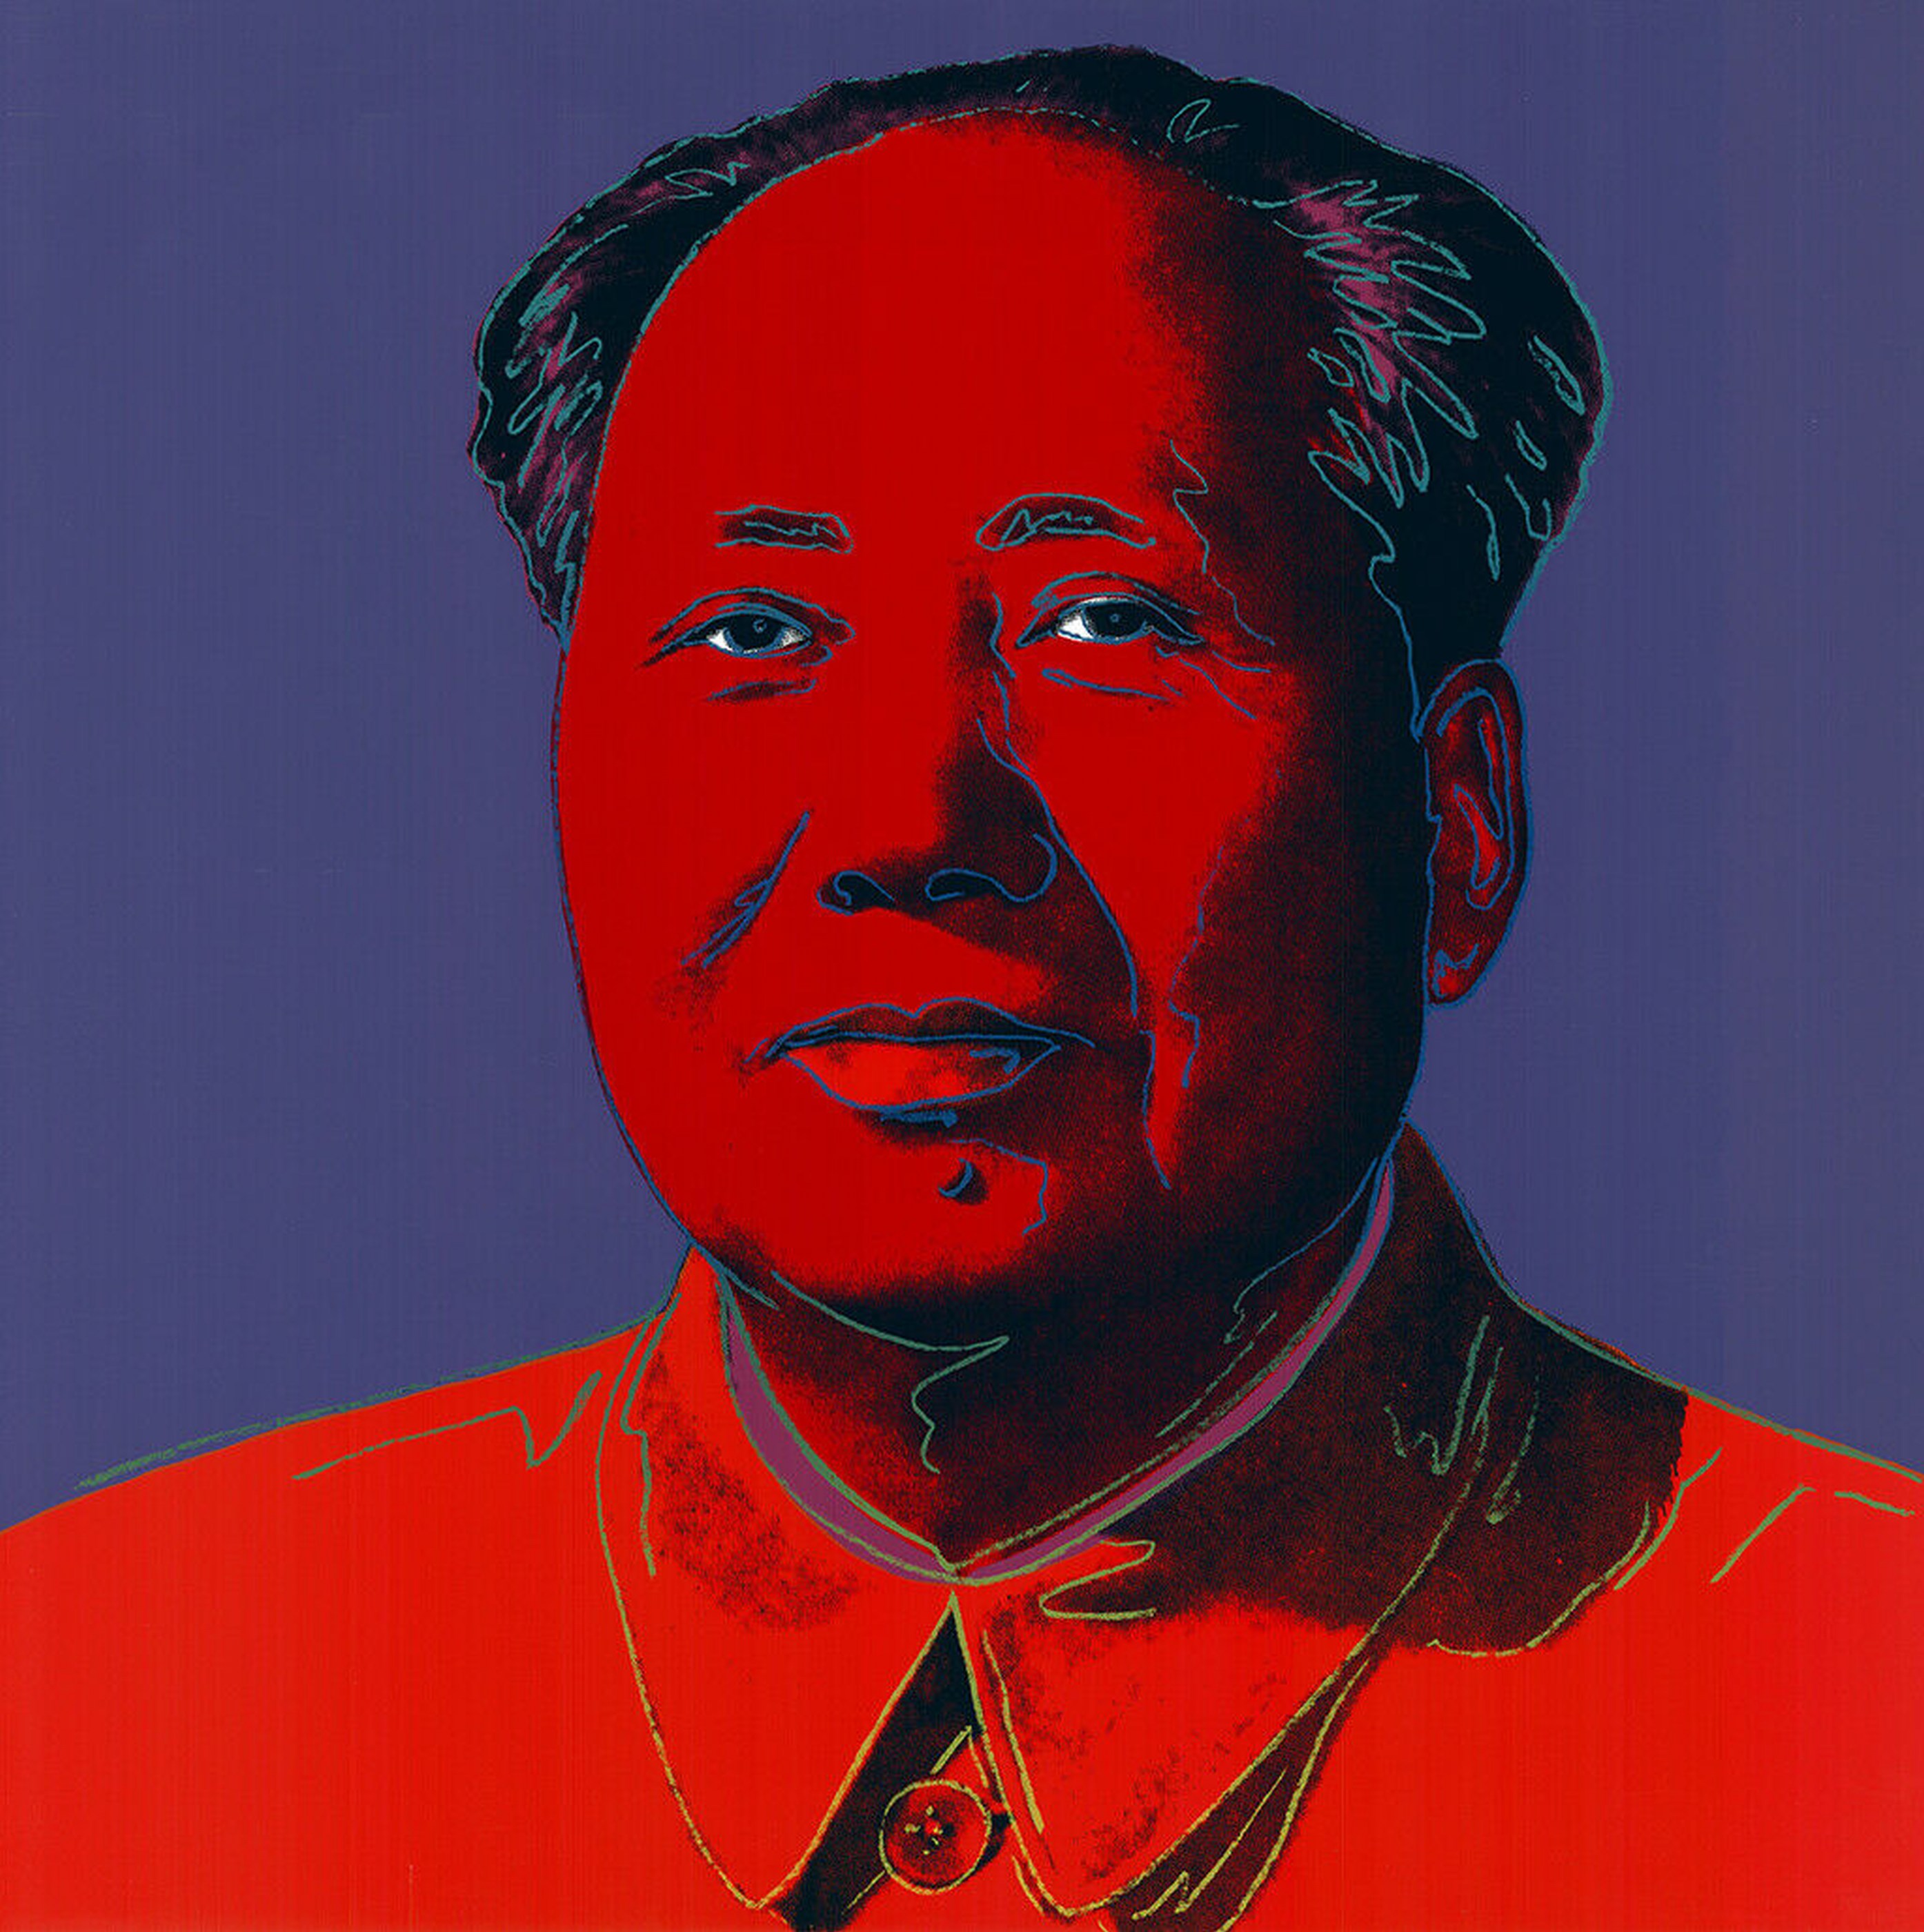 Mao #1 Art, Andy Warhol)" by Jurgen Kuhl - buy online or in Crossroads